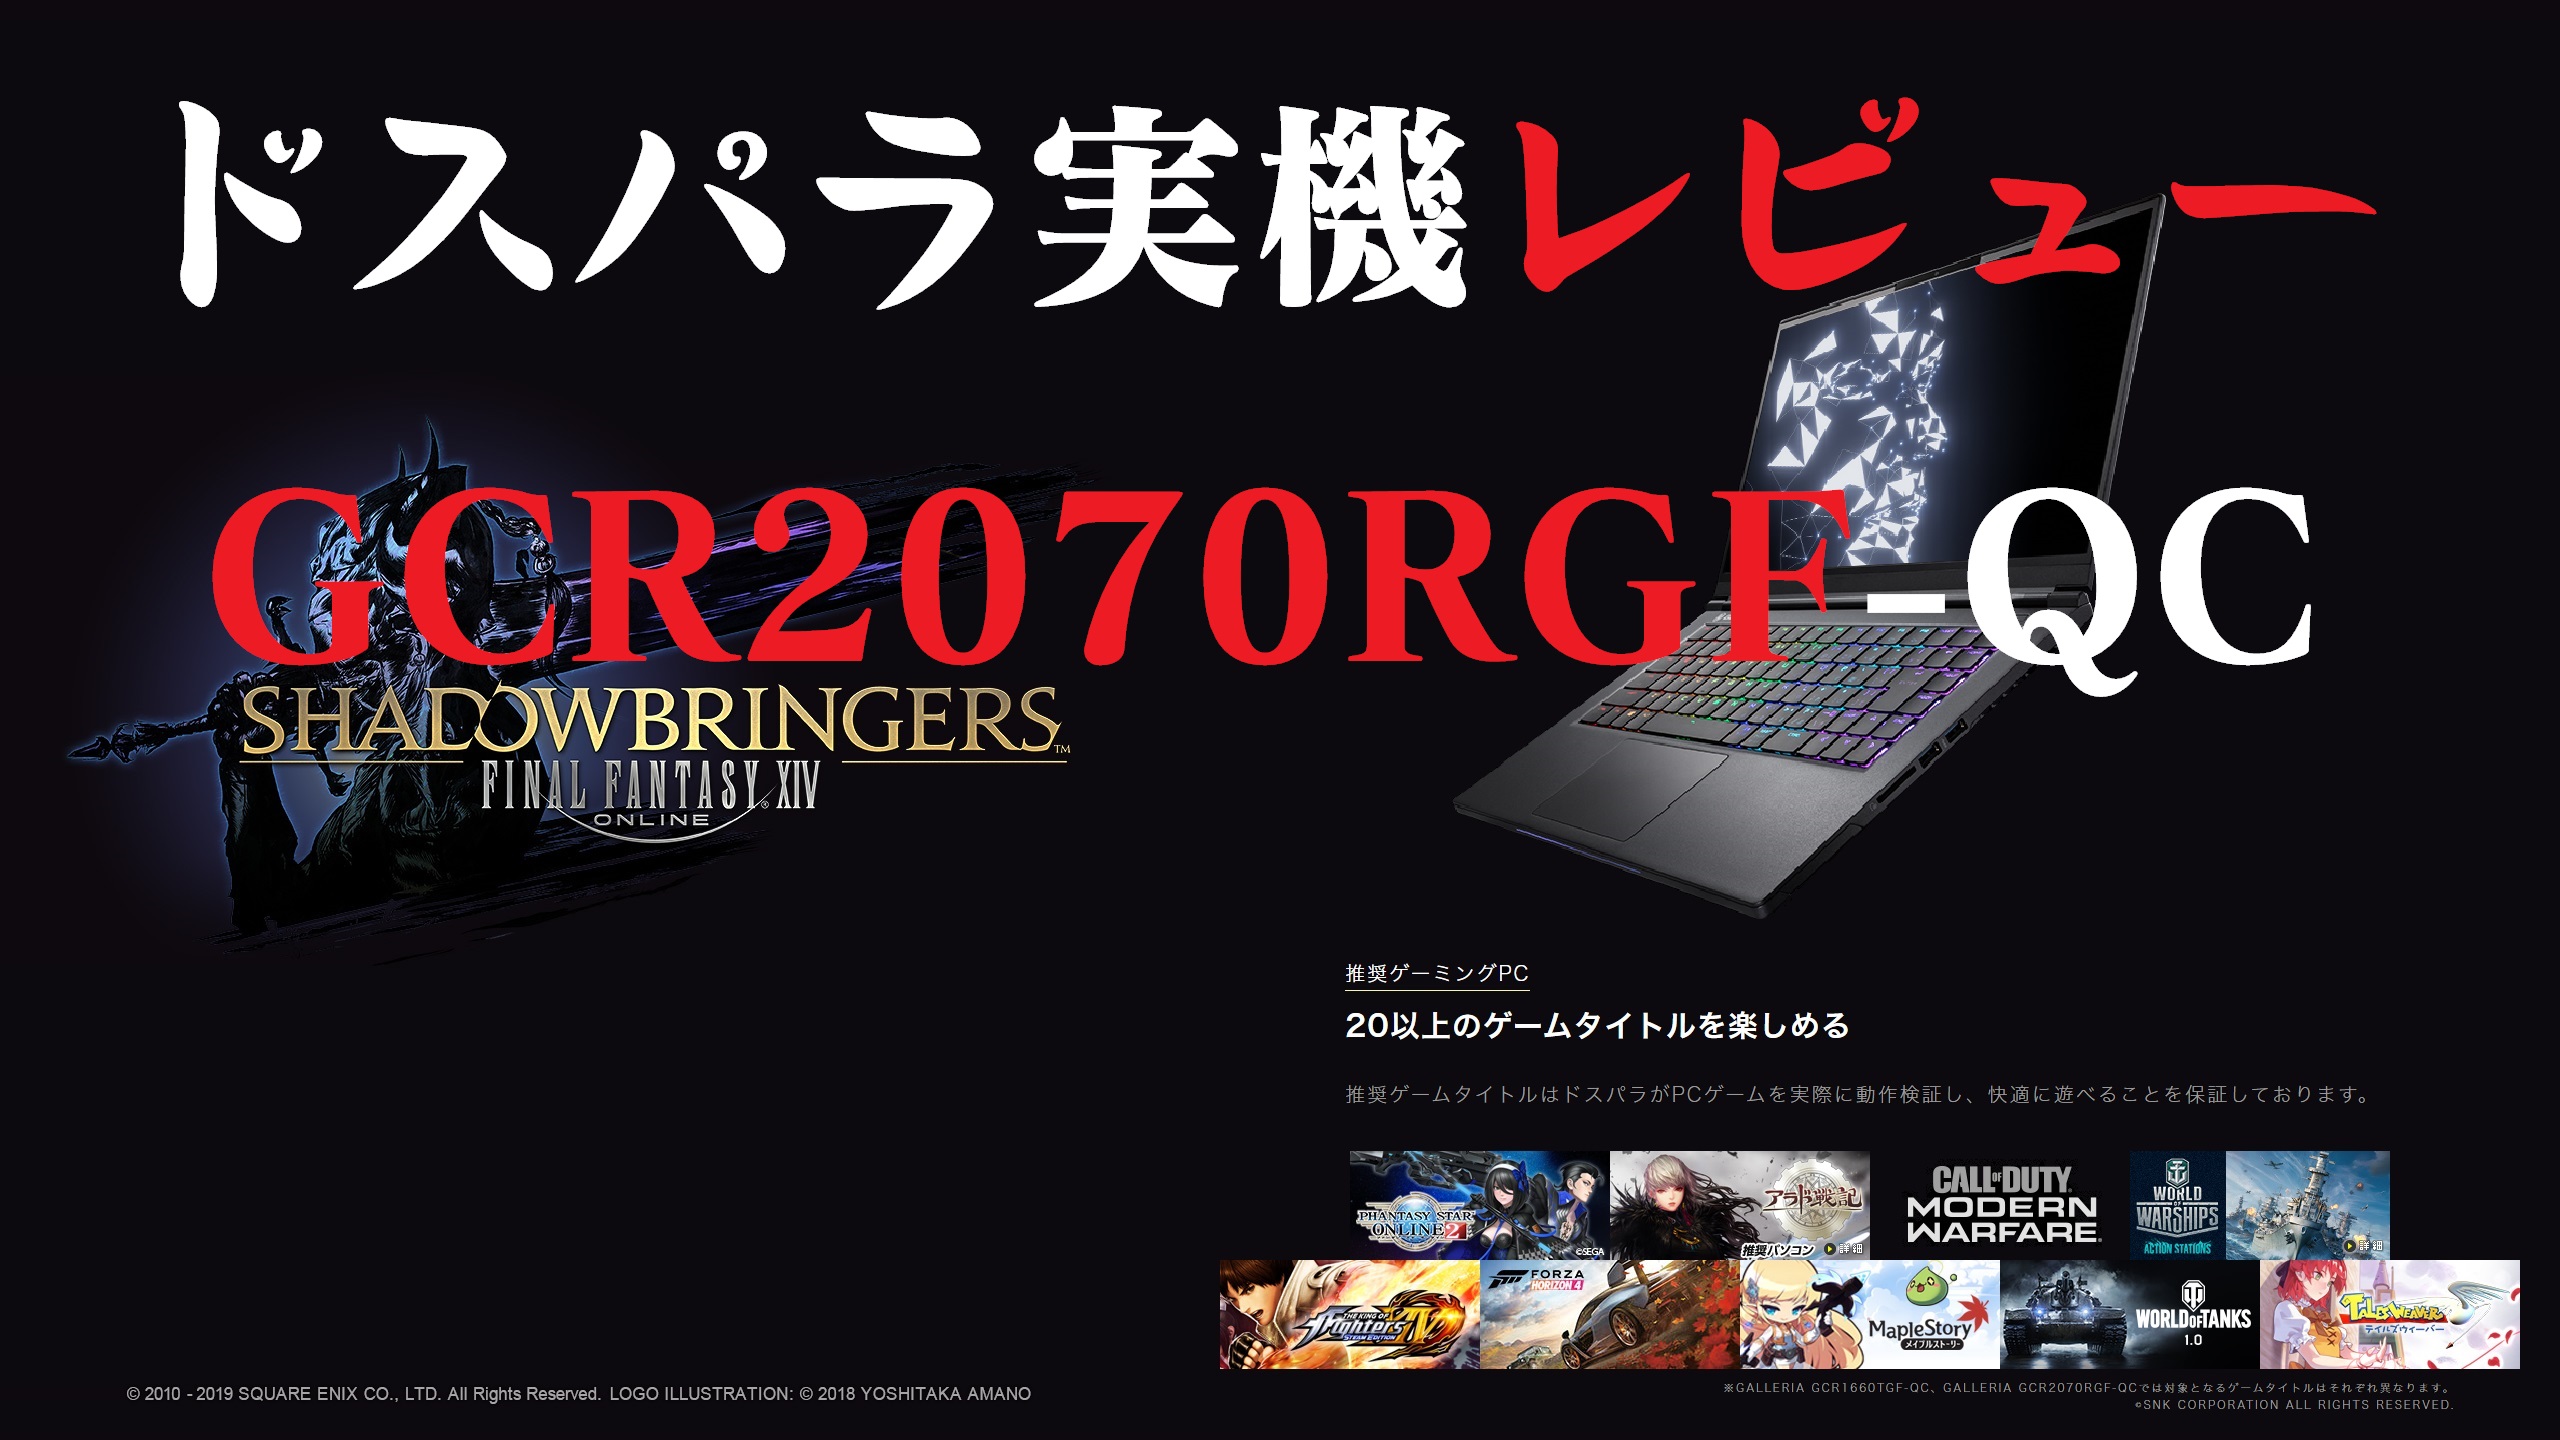 日本公式販売店  ガレリア RTX2070 Windows10 ゲーミングPC しばさん様専用 デスクトップ型PC